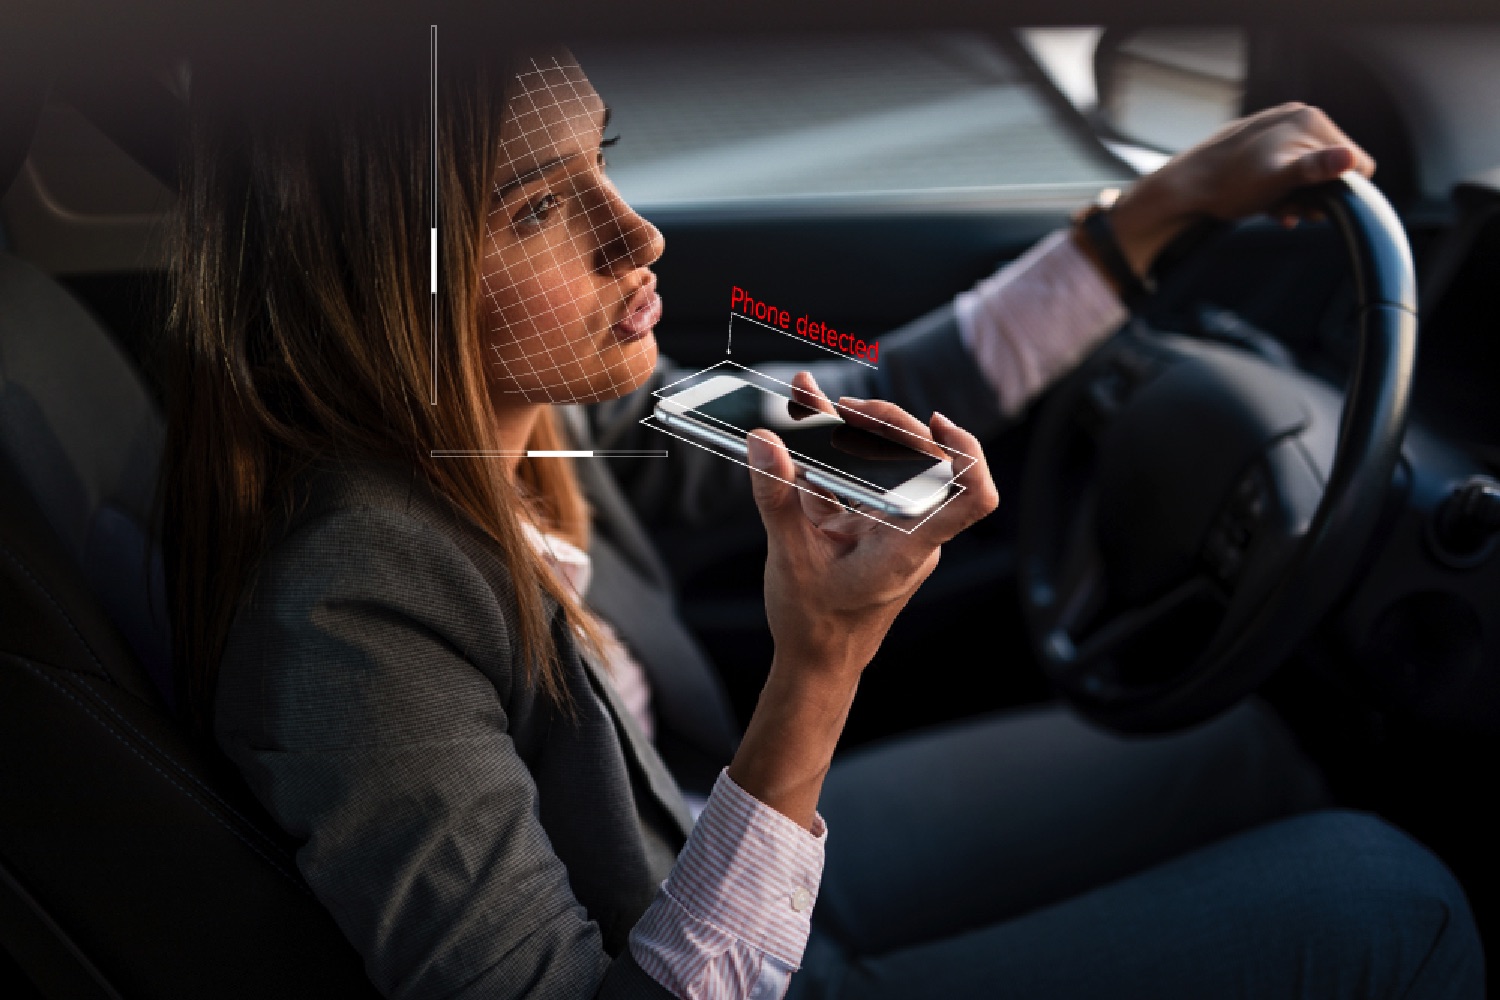 Разговаривать по телефону за рулем. Разговор в машине. Человек в машине с телефоном. Девушка с мобильным телефоном. Курит за рулем.